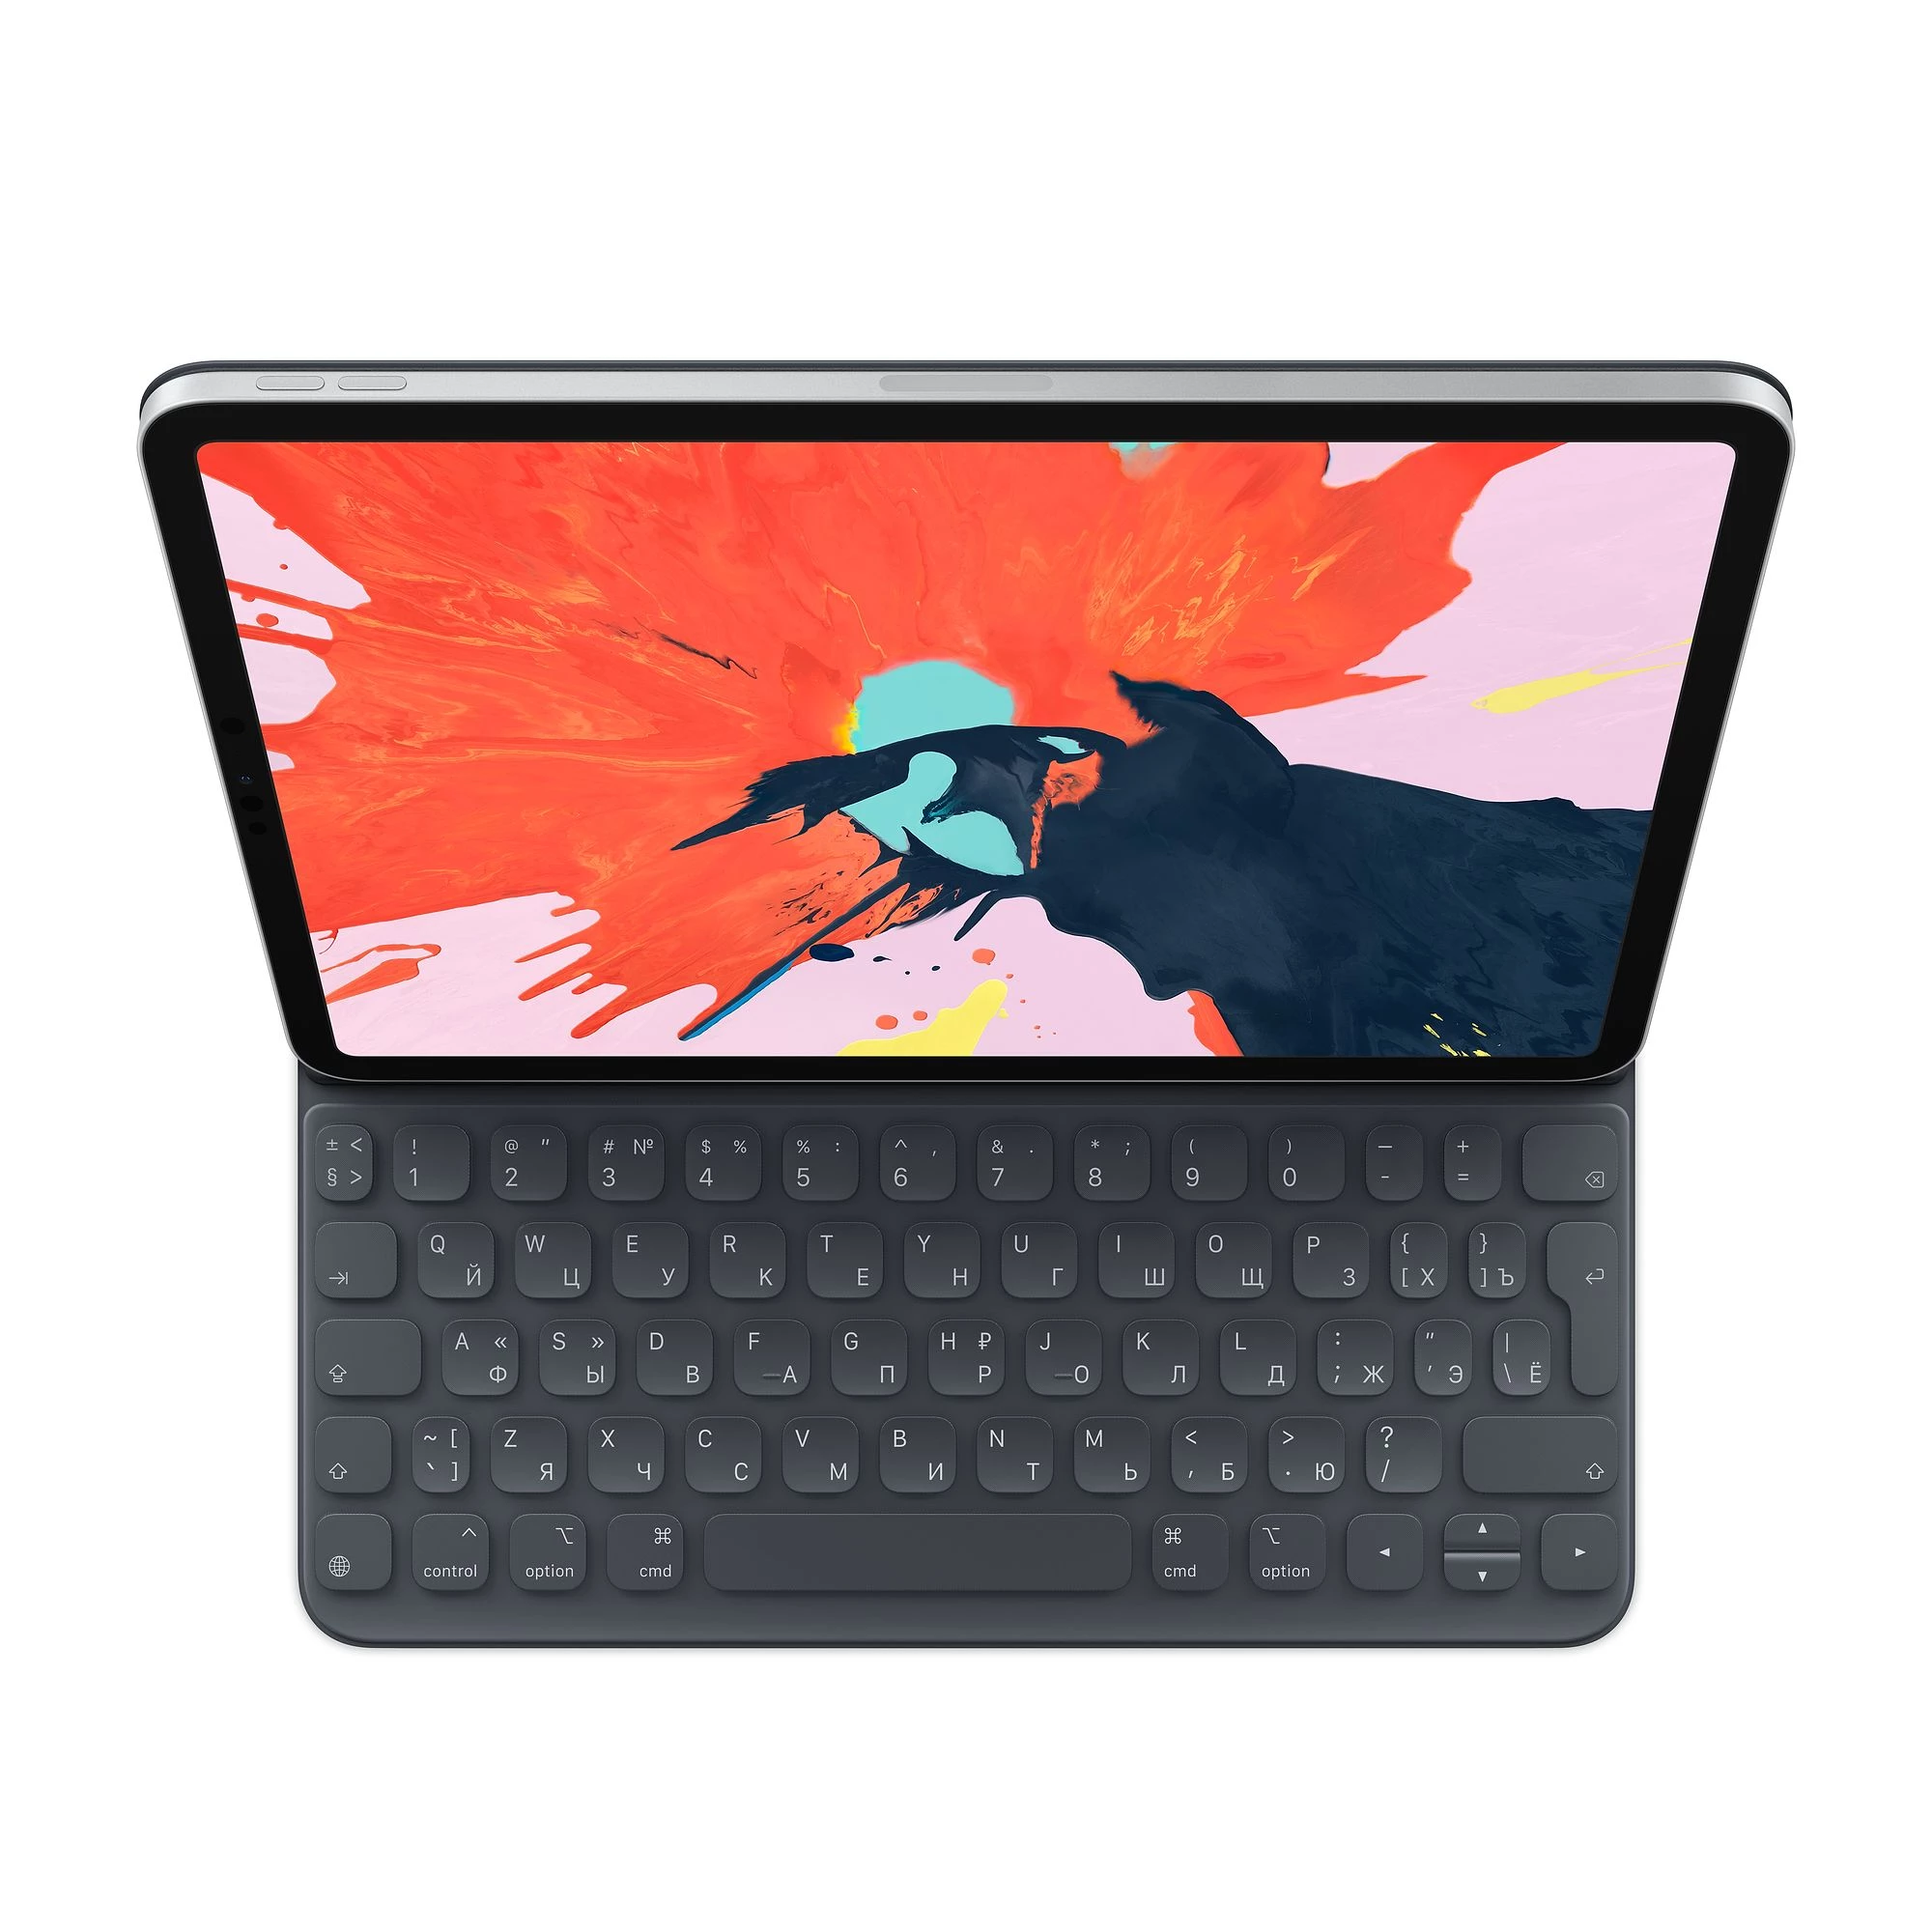 Купить Apple Smart Keyboard Folio for 11-inch iPad Pro (MU8G2RS/A) выгодно  в Киеве цена и обзор в интернет магазине NewTime